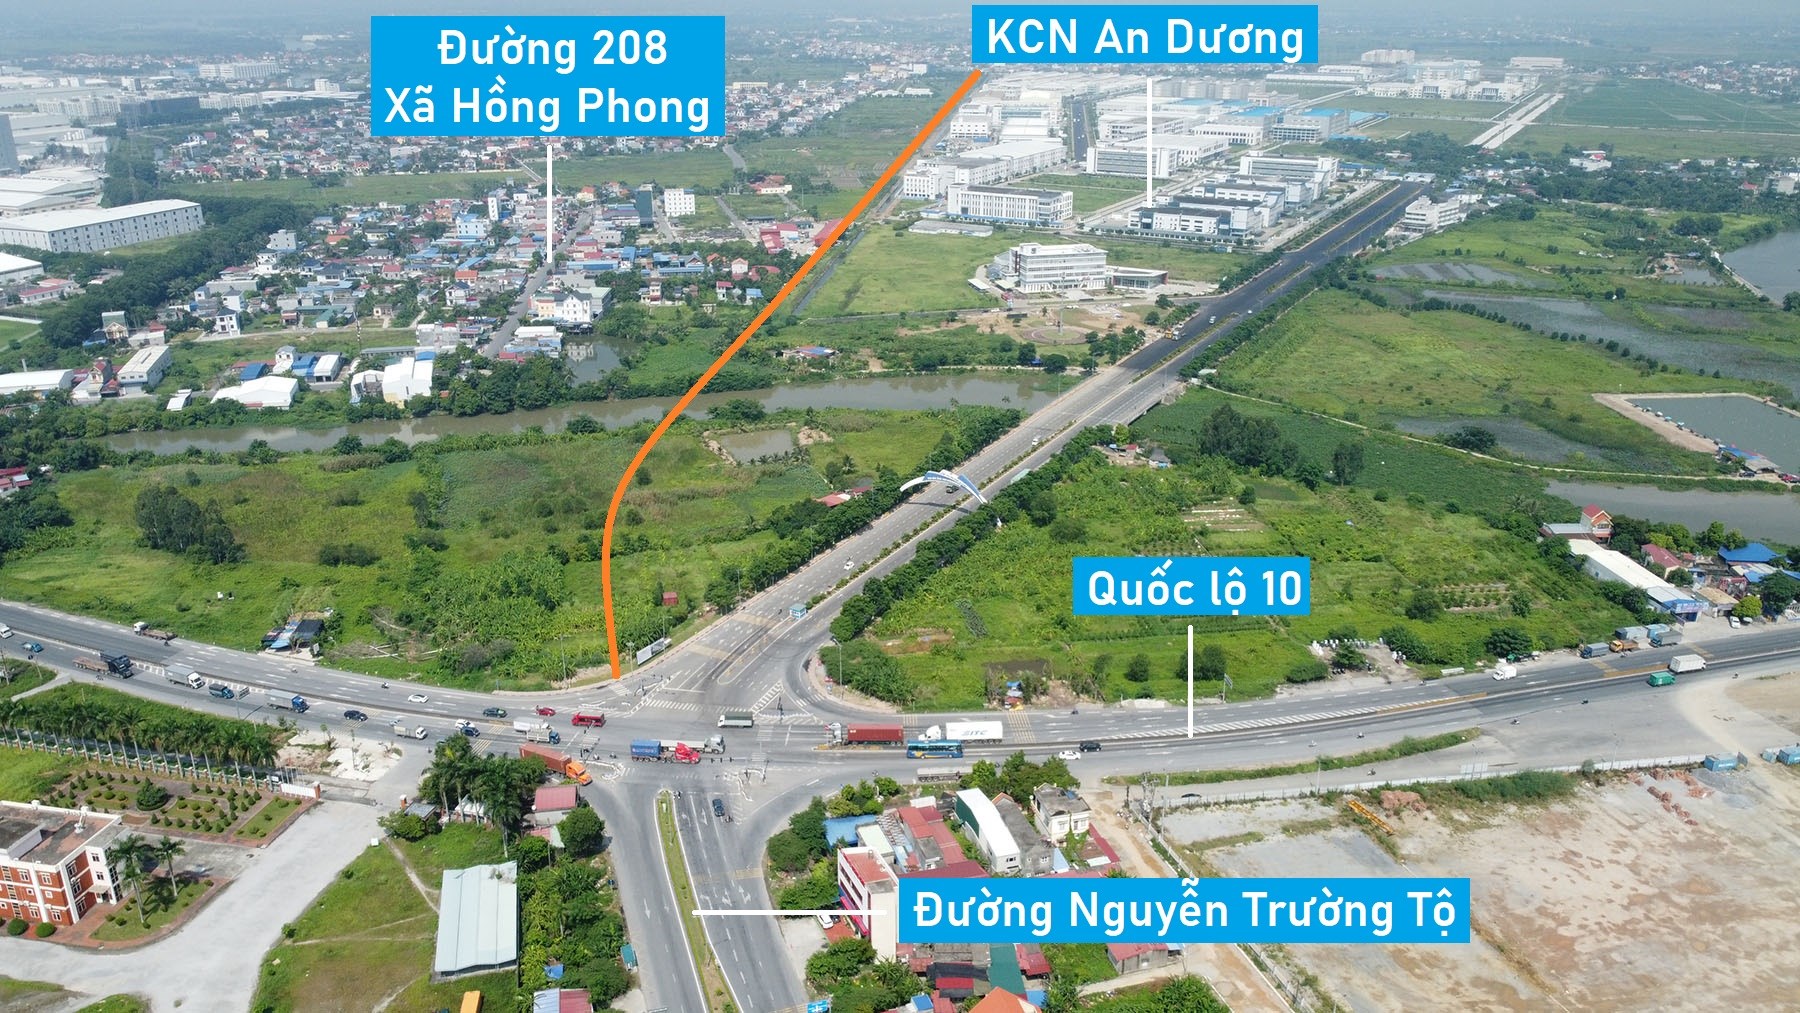 Toàn cảnh vị trí dự kiến quy hoạch cầu vượt sông Rế nối QL10 với KCN An Dương, Hải Phòng